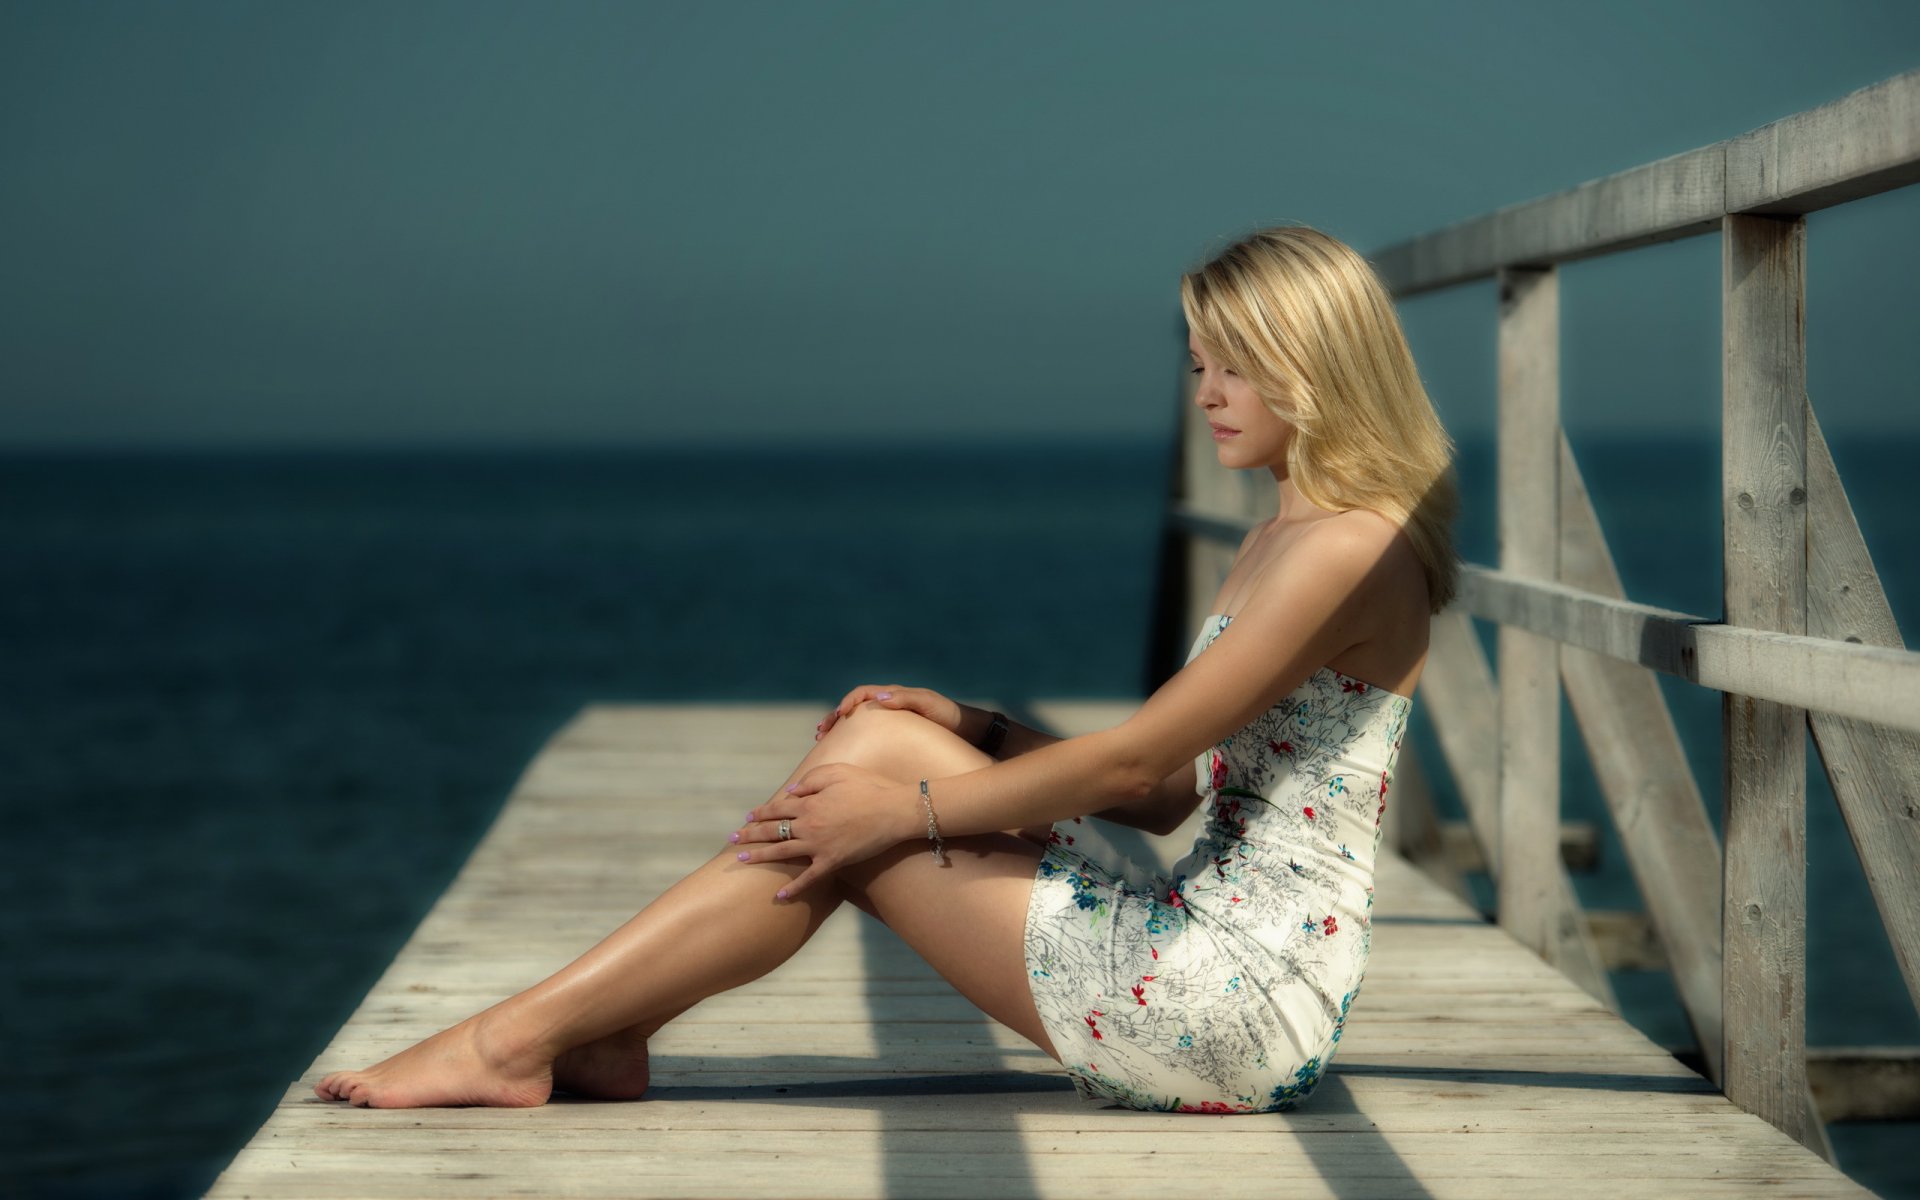 Девушка сидит на берегу